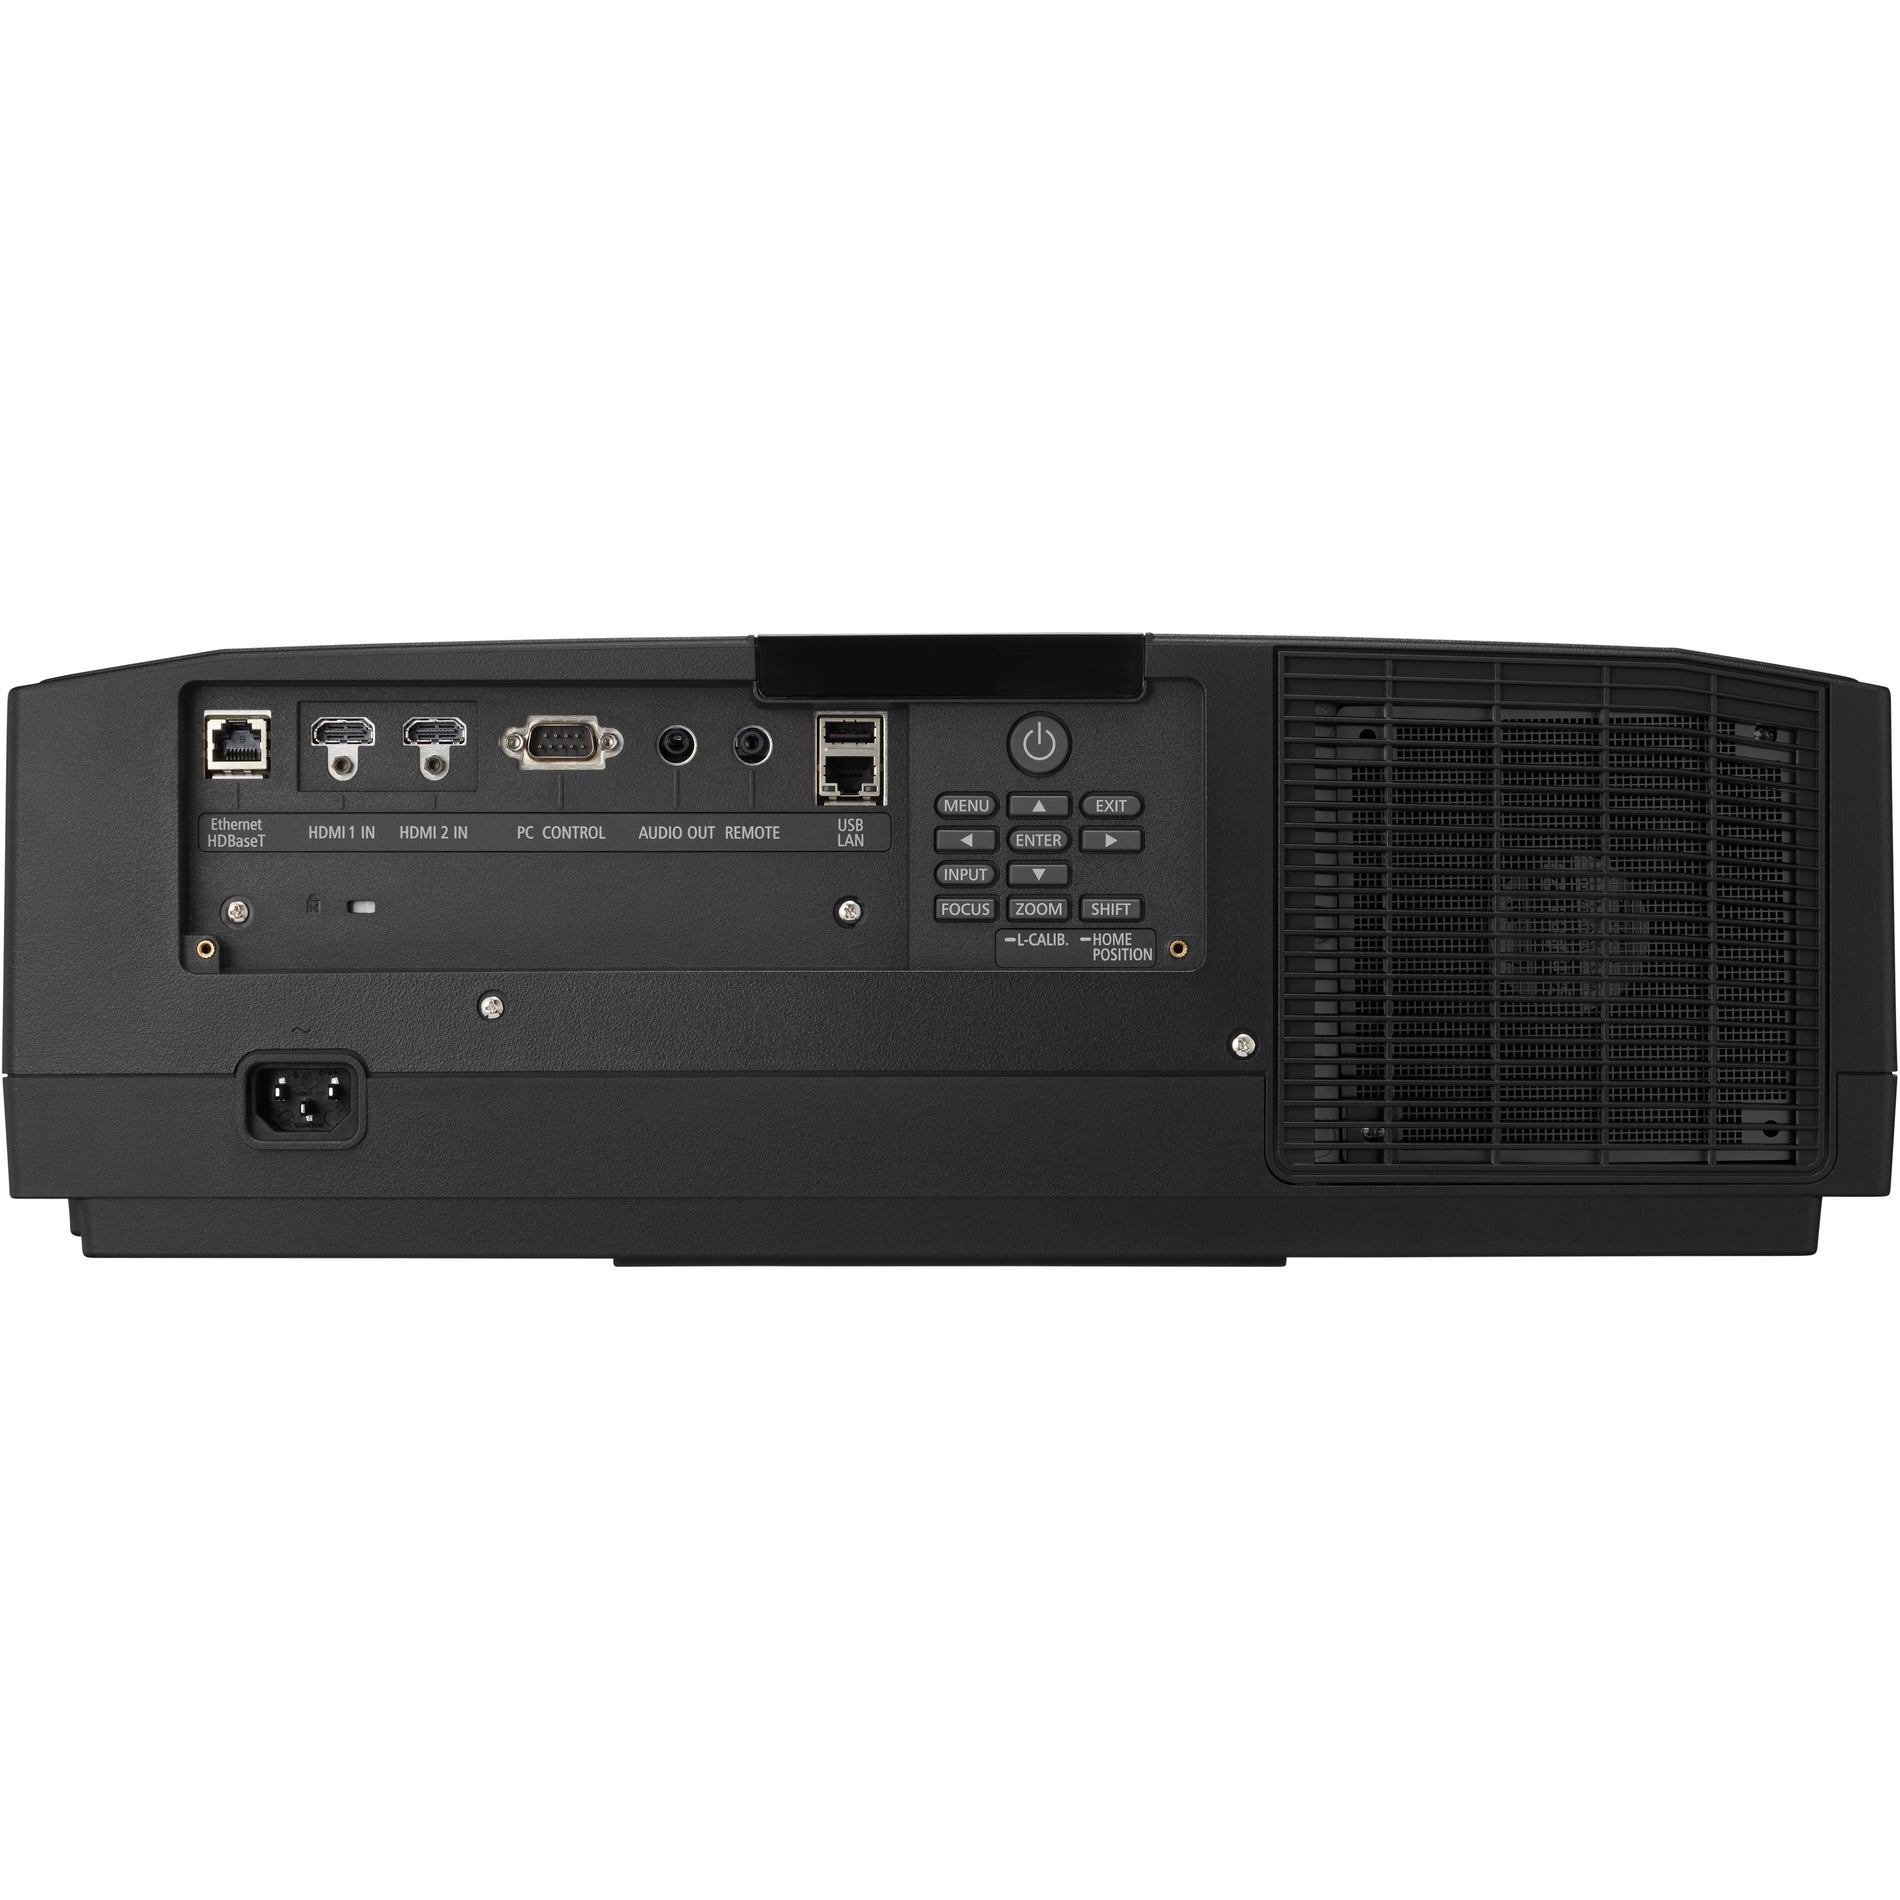 Sharp NEC Display (NPPV800ULB141ZL) Projectors (NP-PV800UL-B1-41ZL)